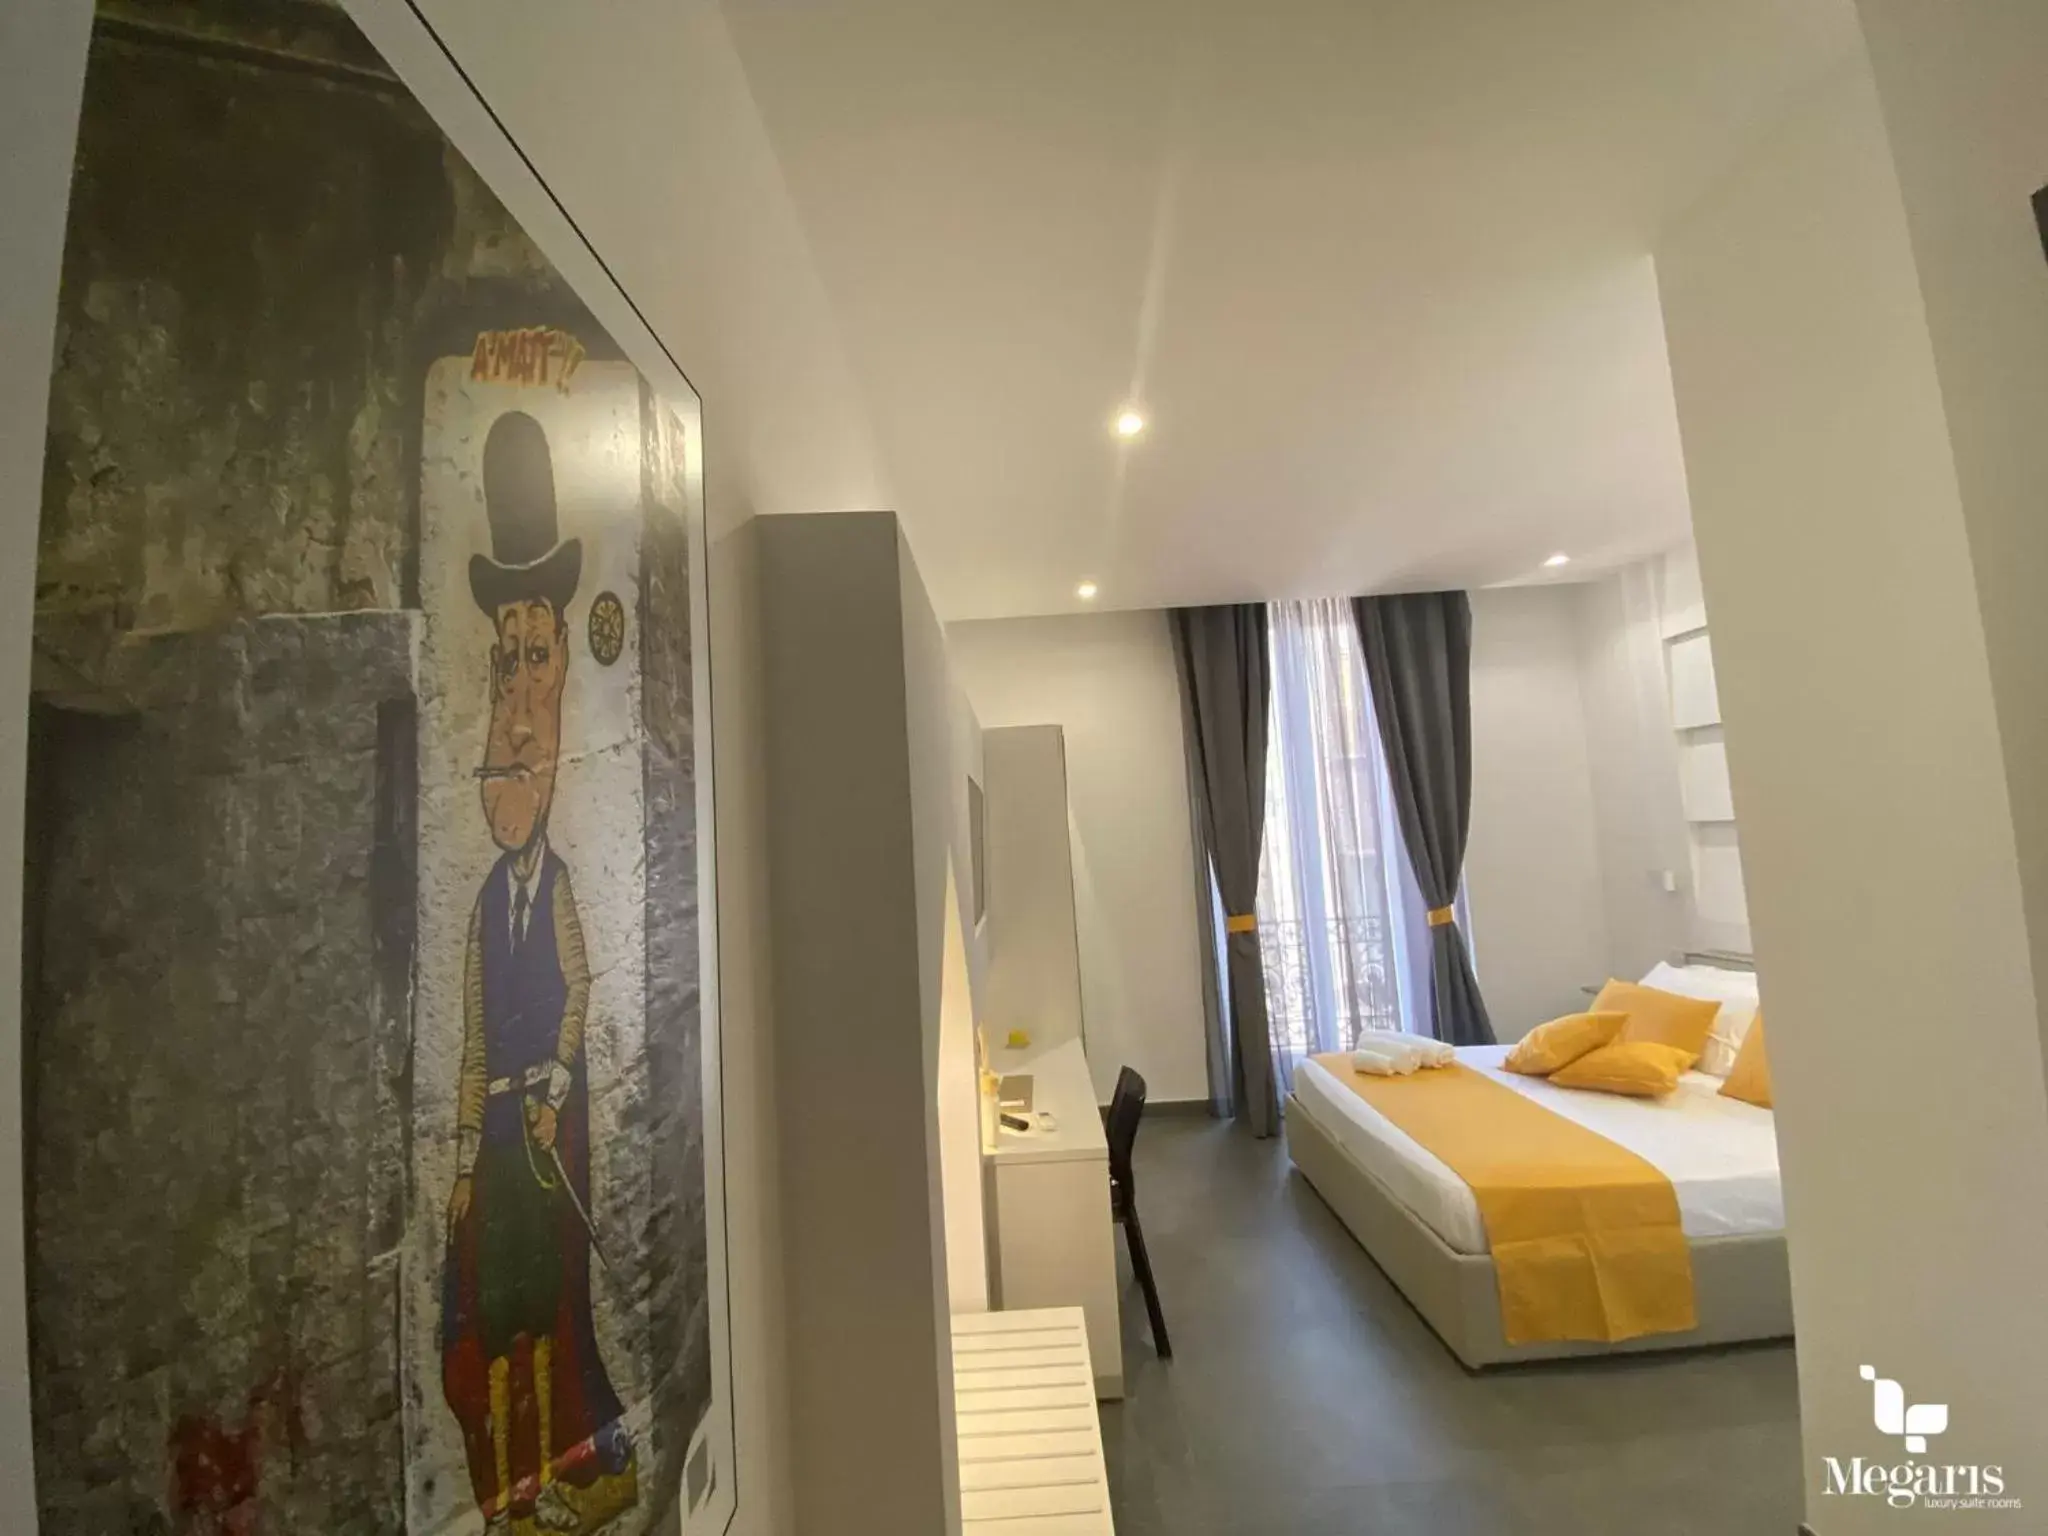 Double Room in Megaris Luxury Suite Rooms